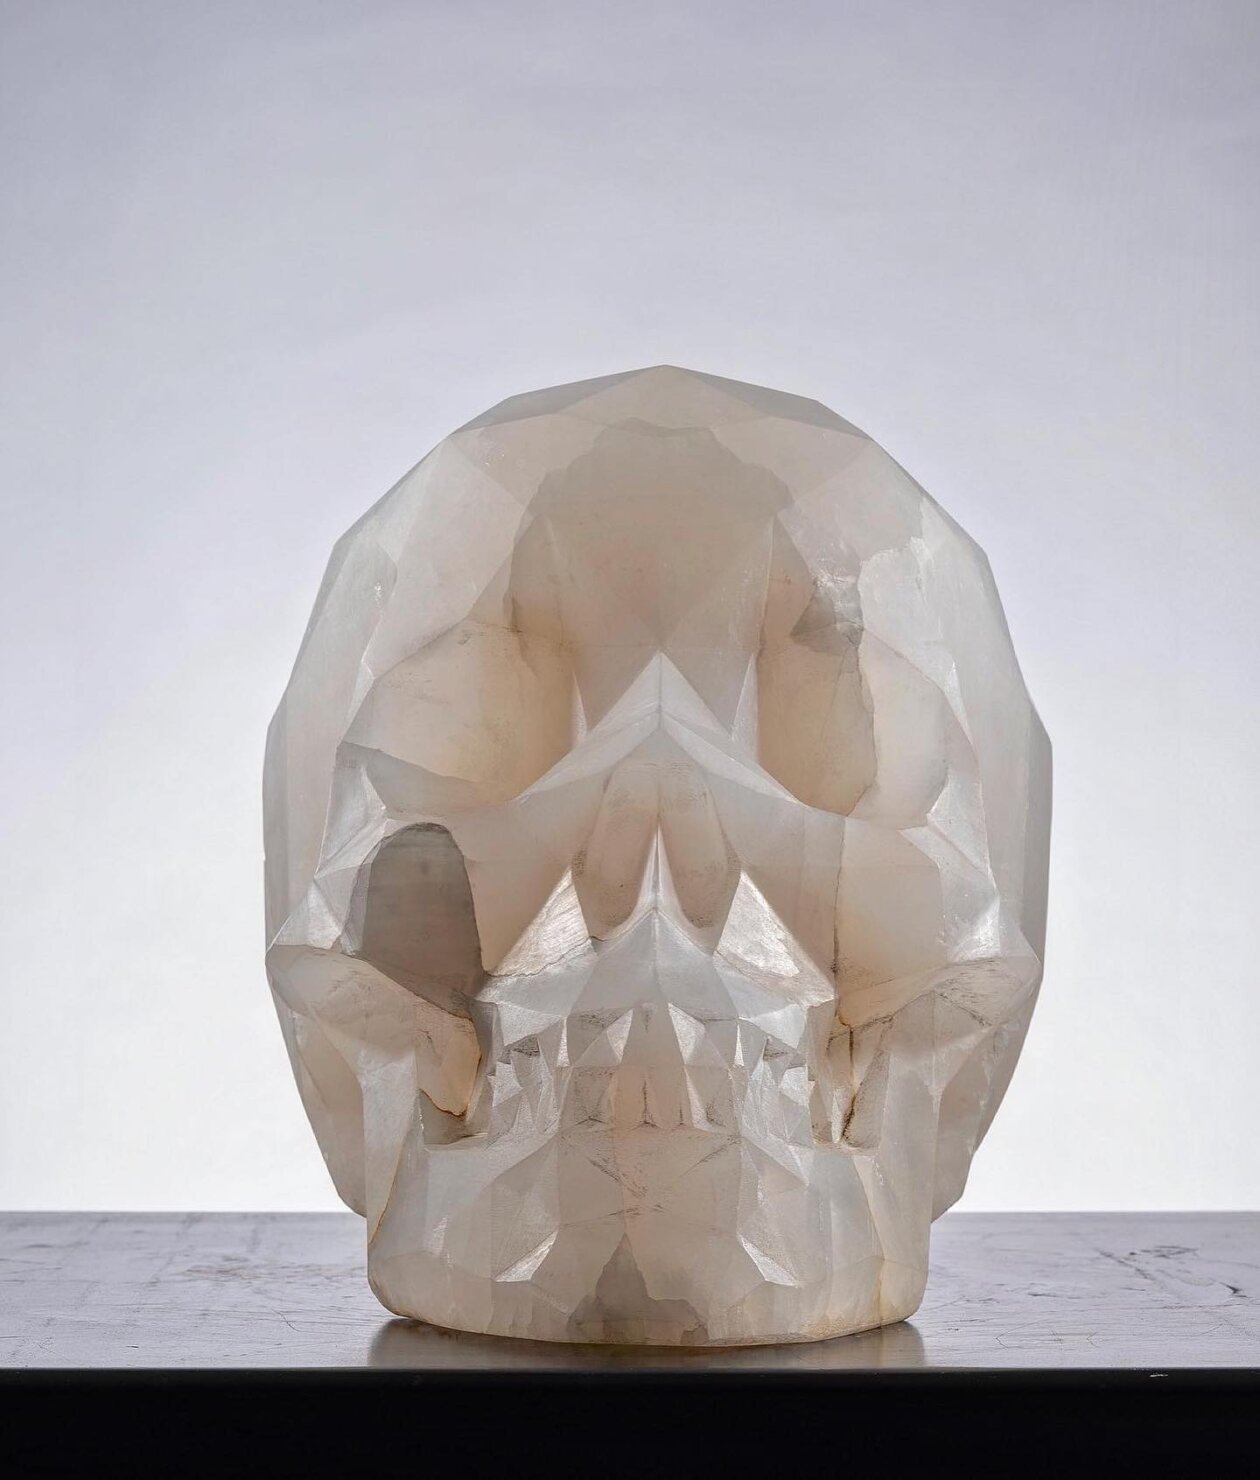 Diamond, A Skull Marble Sculpture By Massimiliano Pelletti (3)